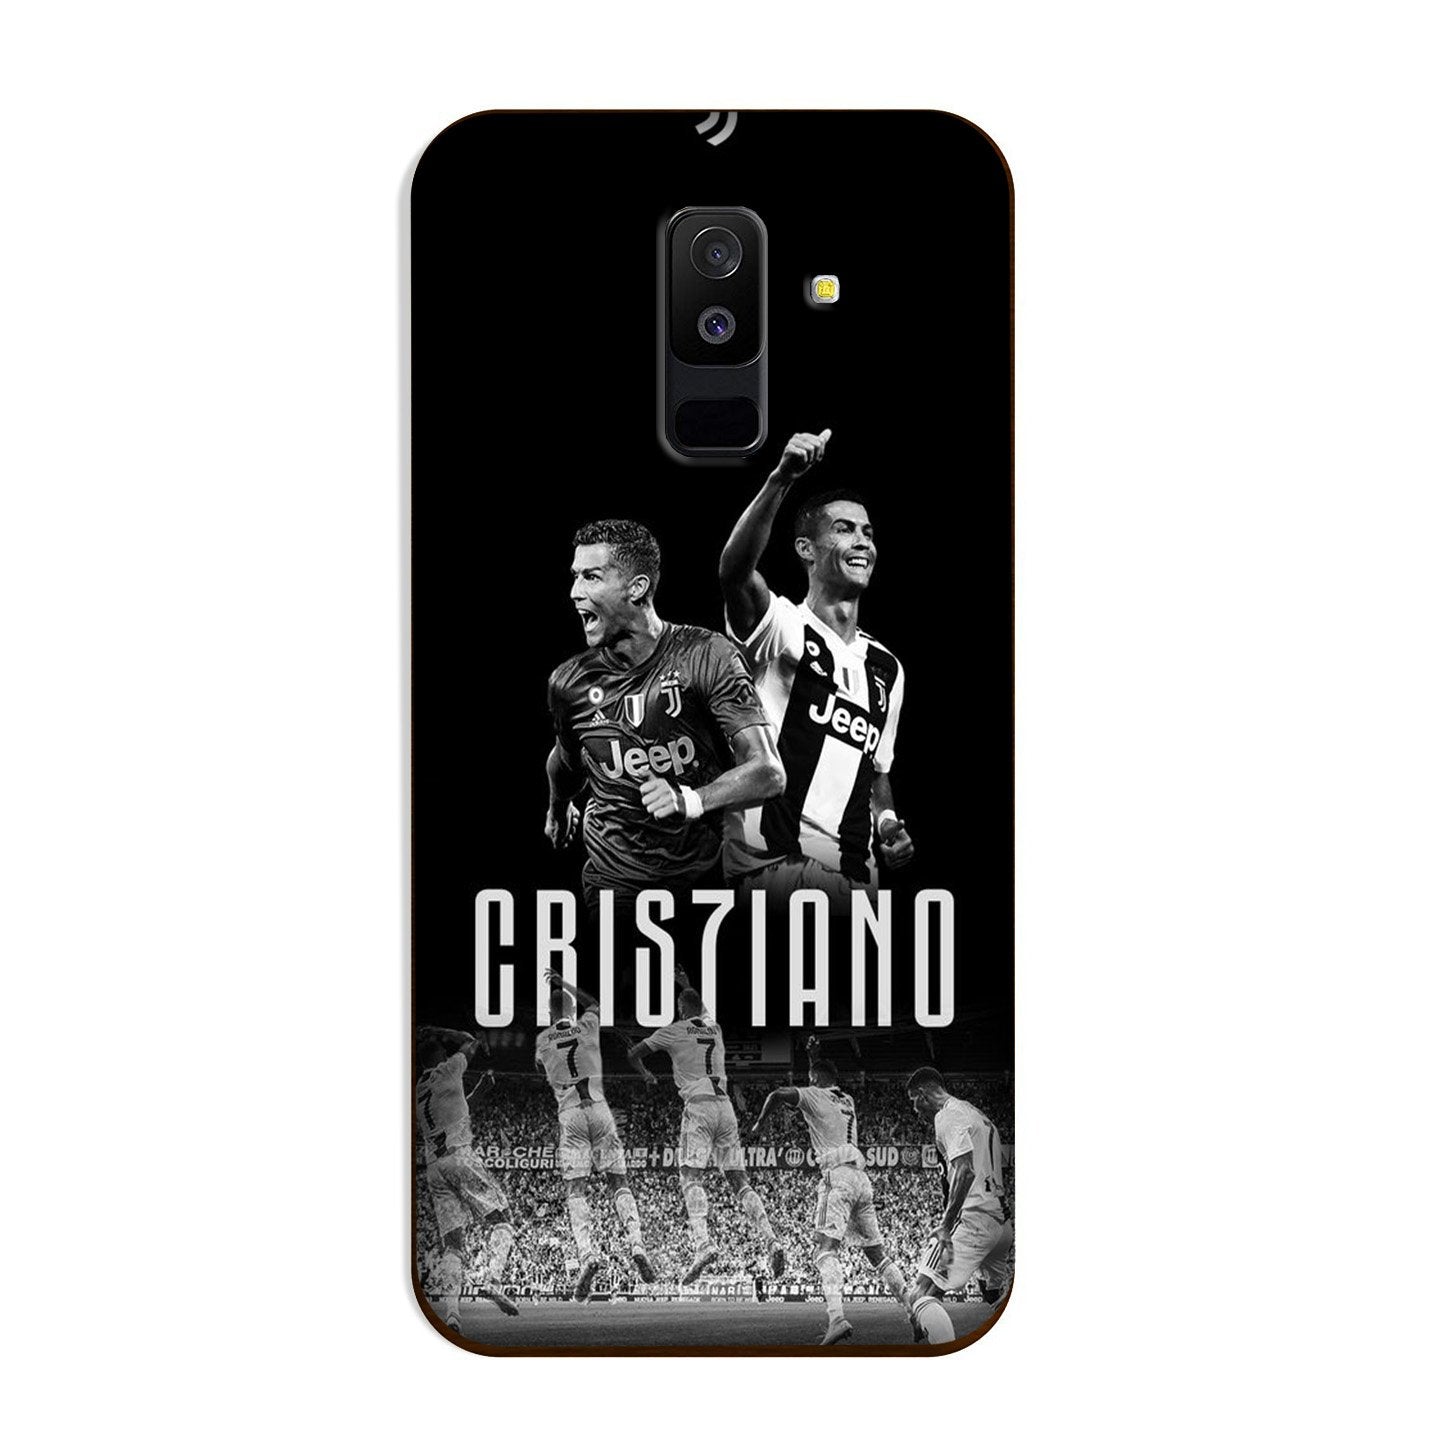 Cristiano Case for Galaxy J8  (Design - 165)